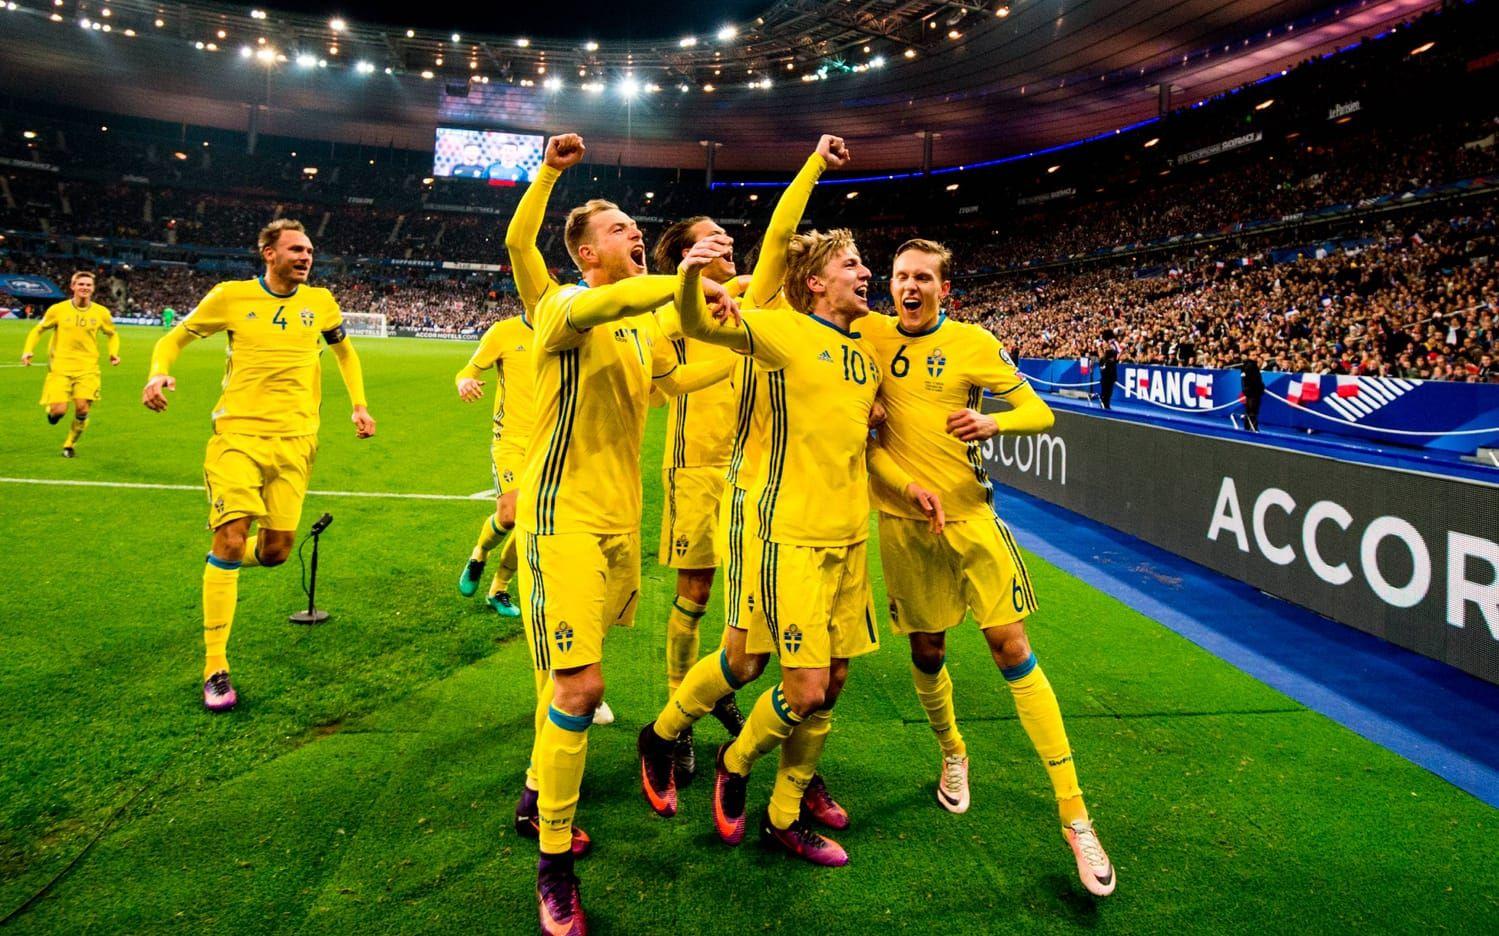 Svenskt jubel efter Forsbergs 1-0-mål mot Frankrike i VM-kvalet. Bild: Bildbyrån